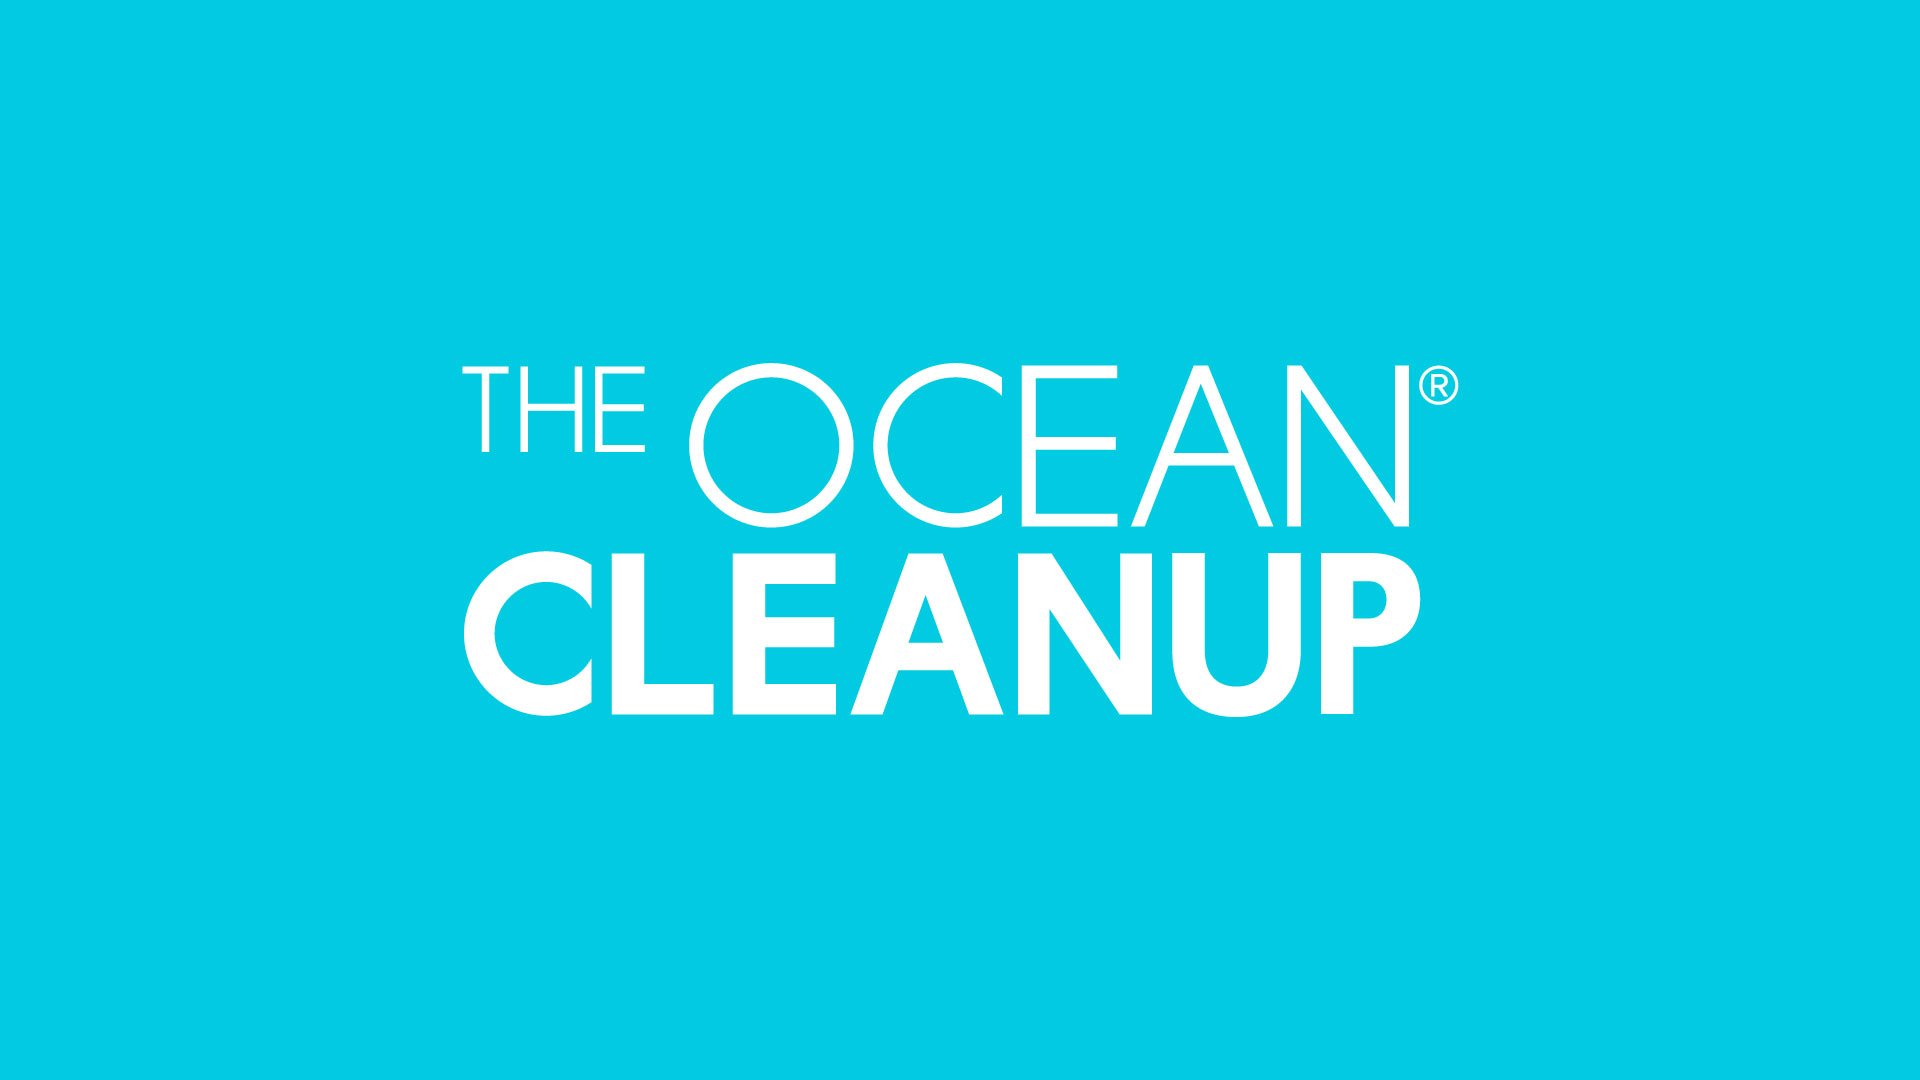 Ocean clean up - image